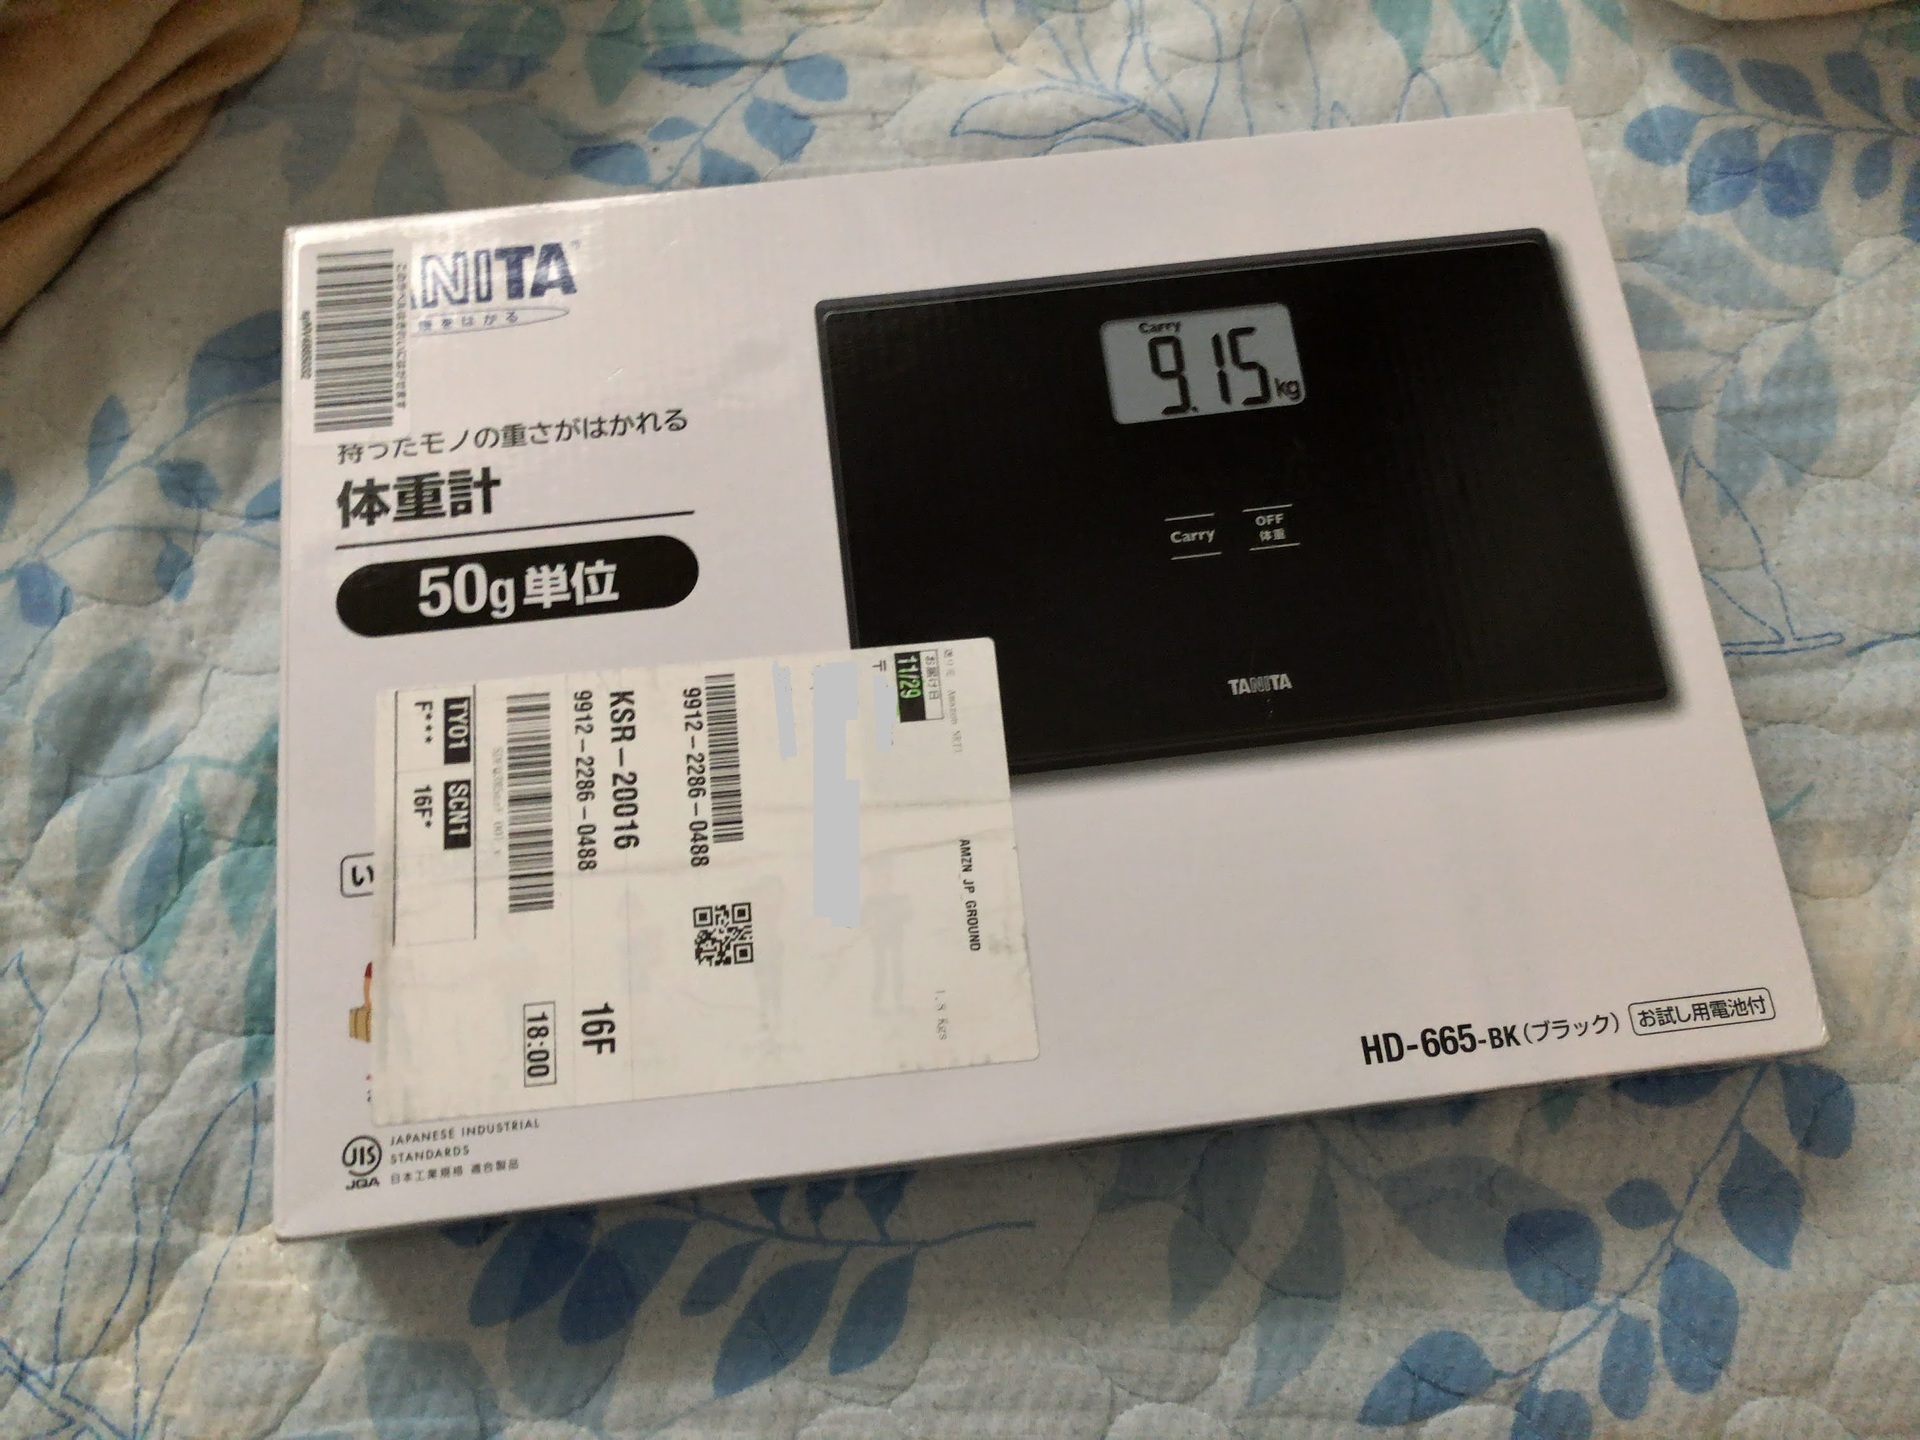 Amazon に注文をしていた 体重計が届いた: ogu's blog (かずさ便り-ちょっとだけPCの話も)